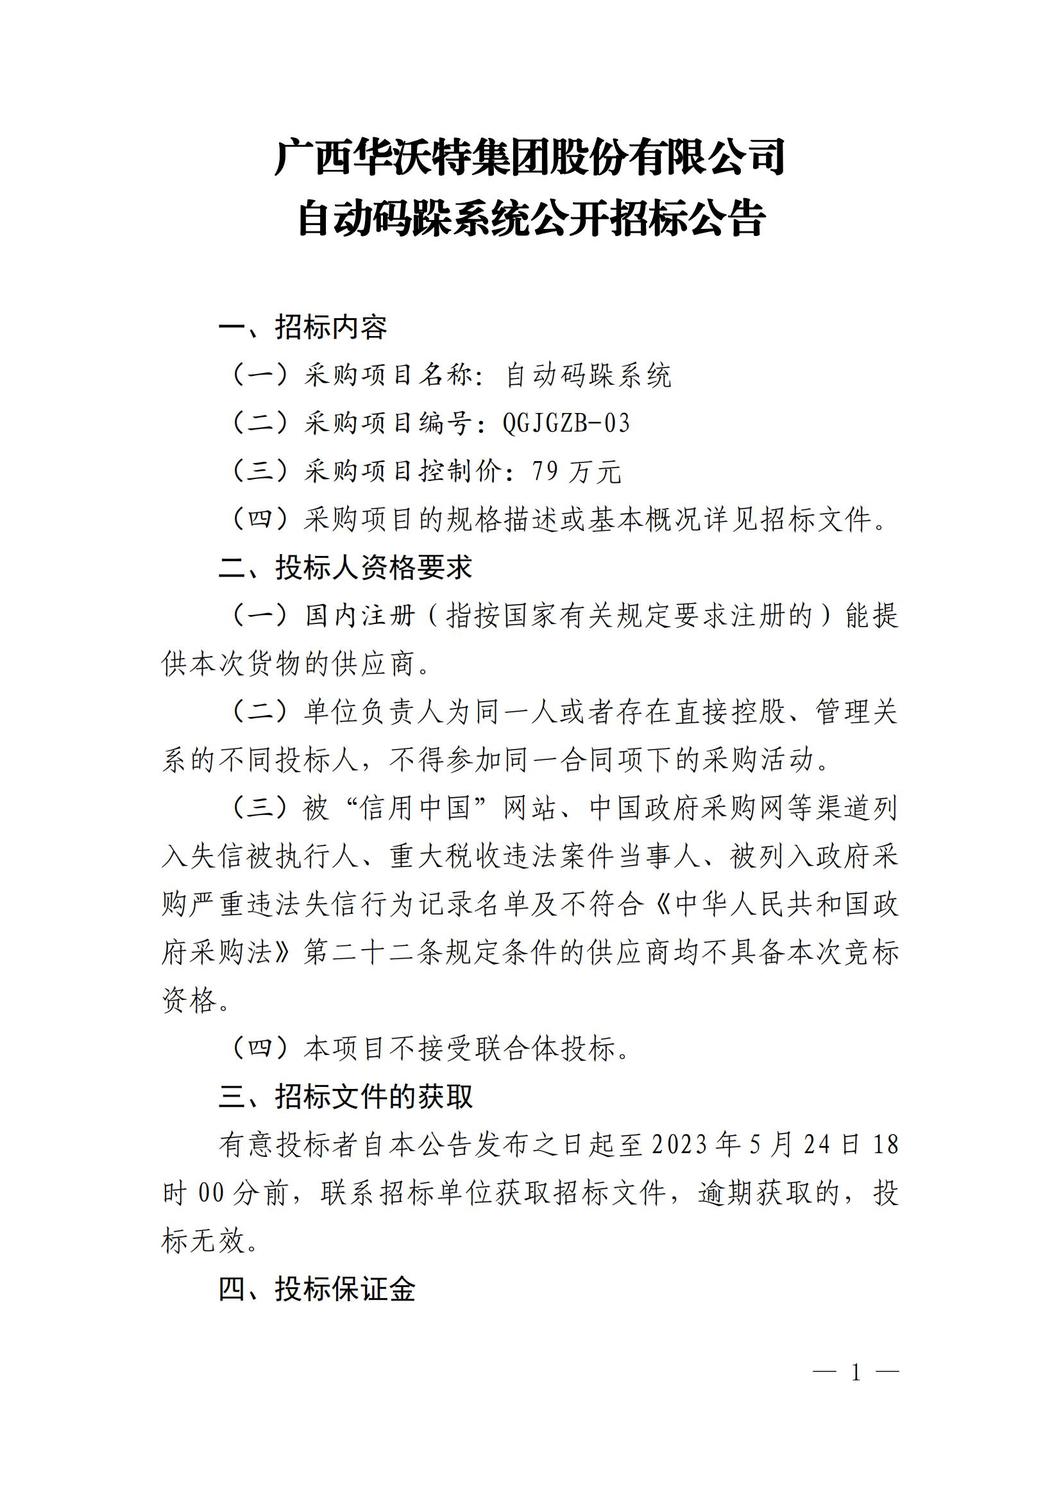 广西华沃特集团股份有限公司自动码跺系统公开招标公告(2)_00.jpg